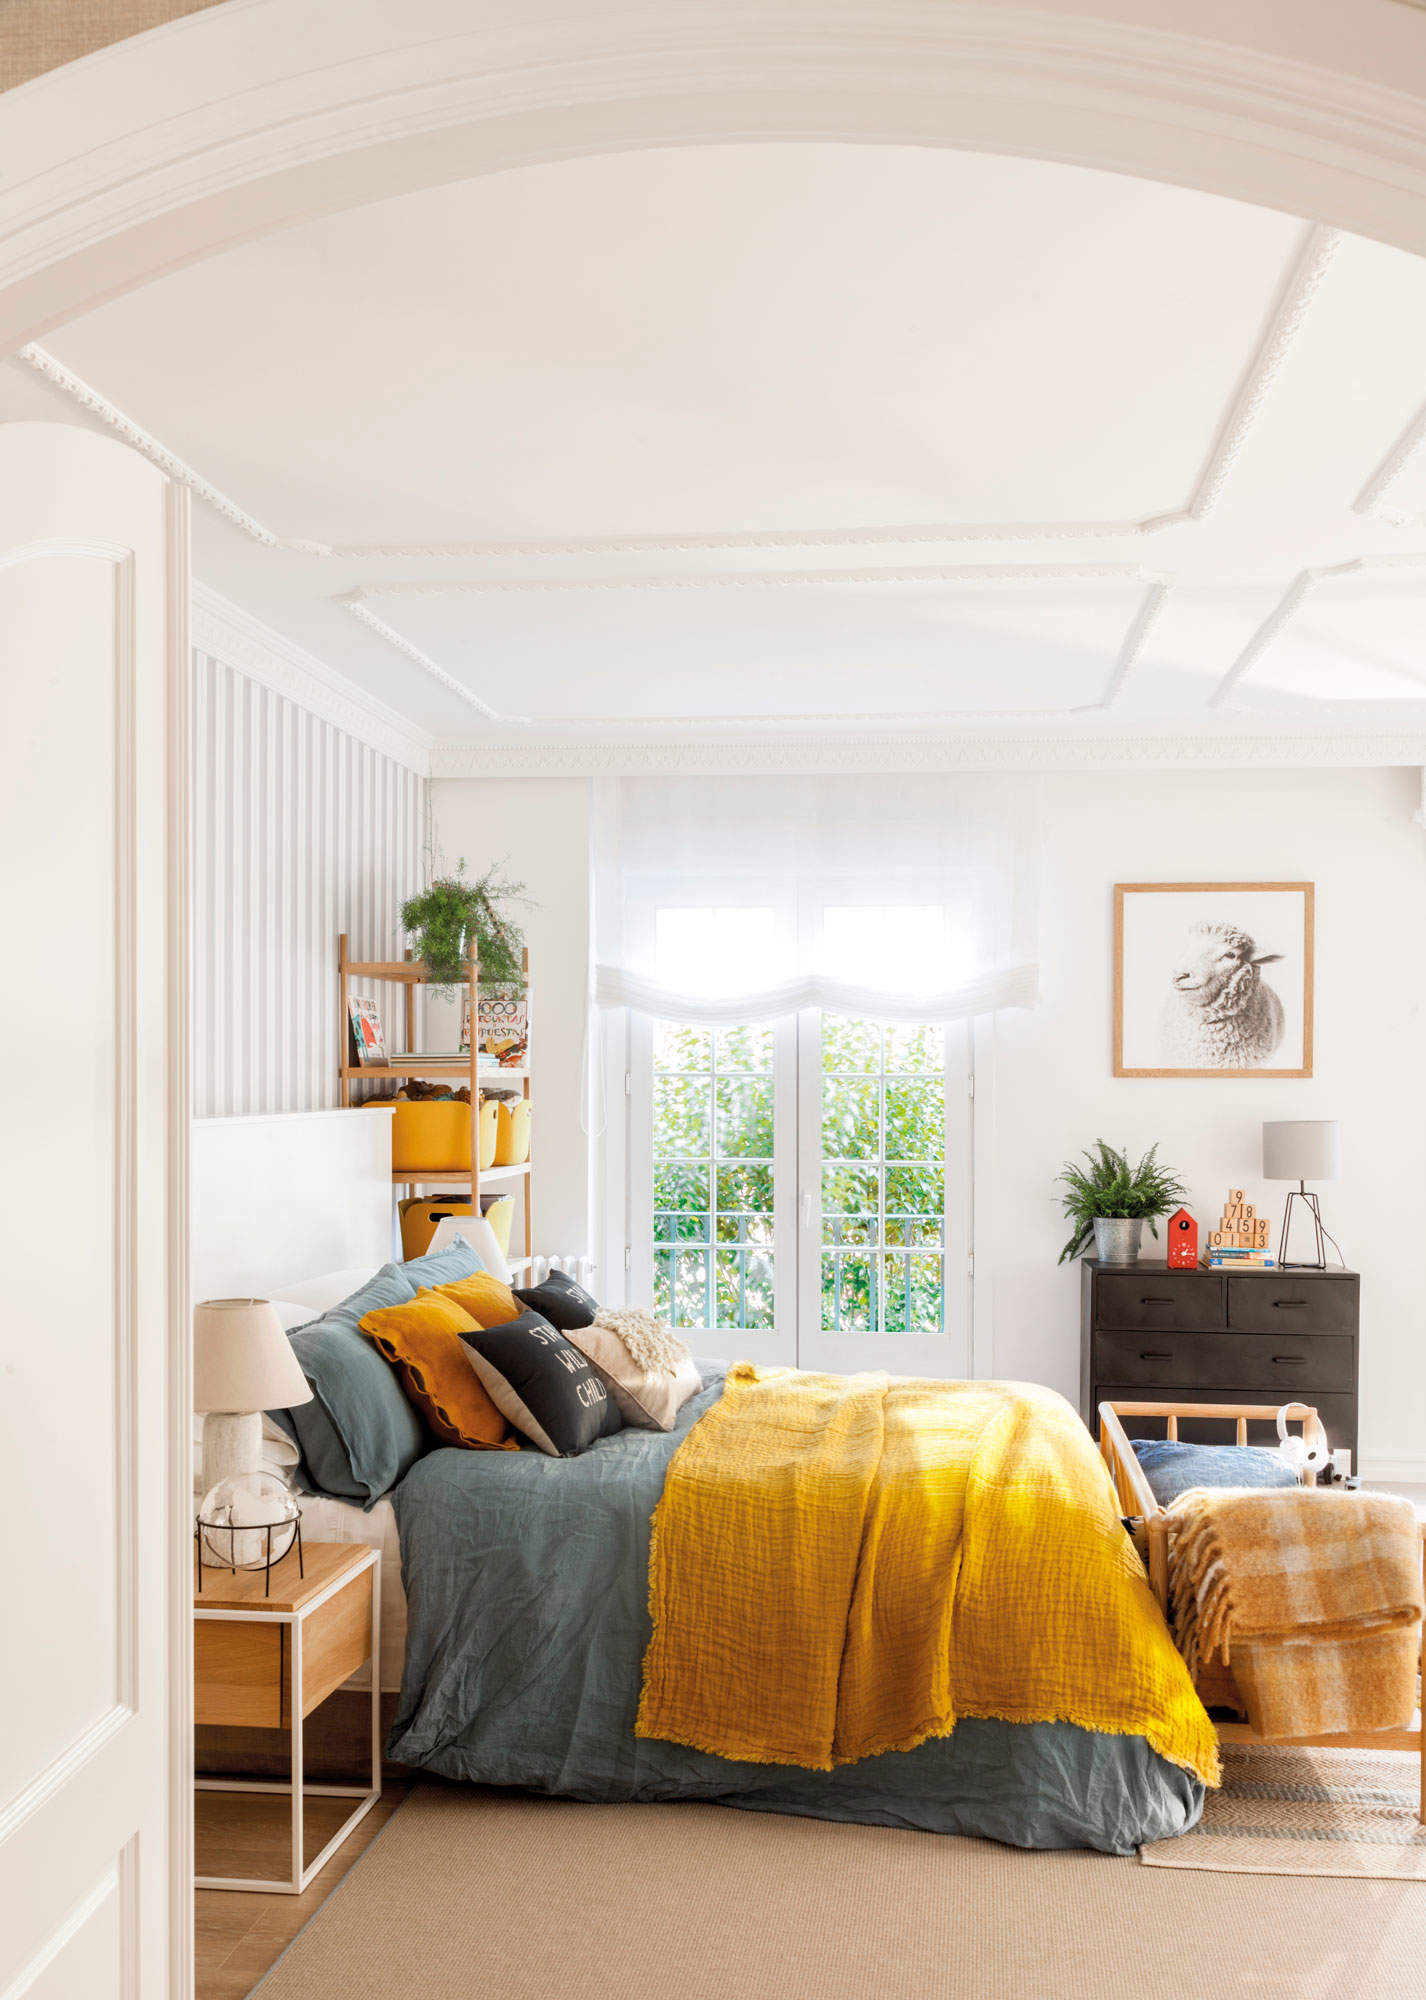 Dormitorio con techo decorado con molduras, papel pintado de rayas y ropa de cama de color